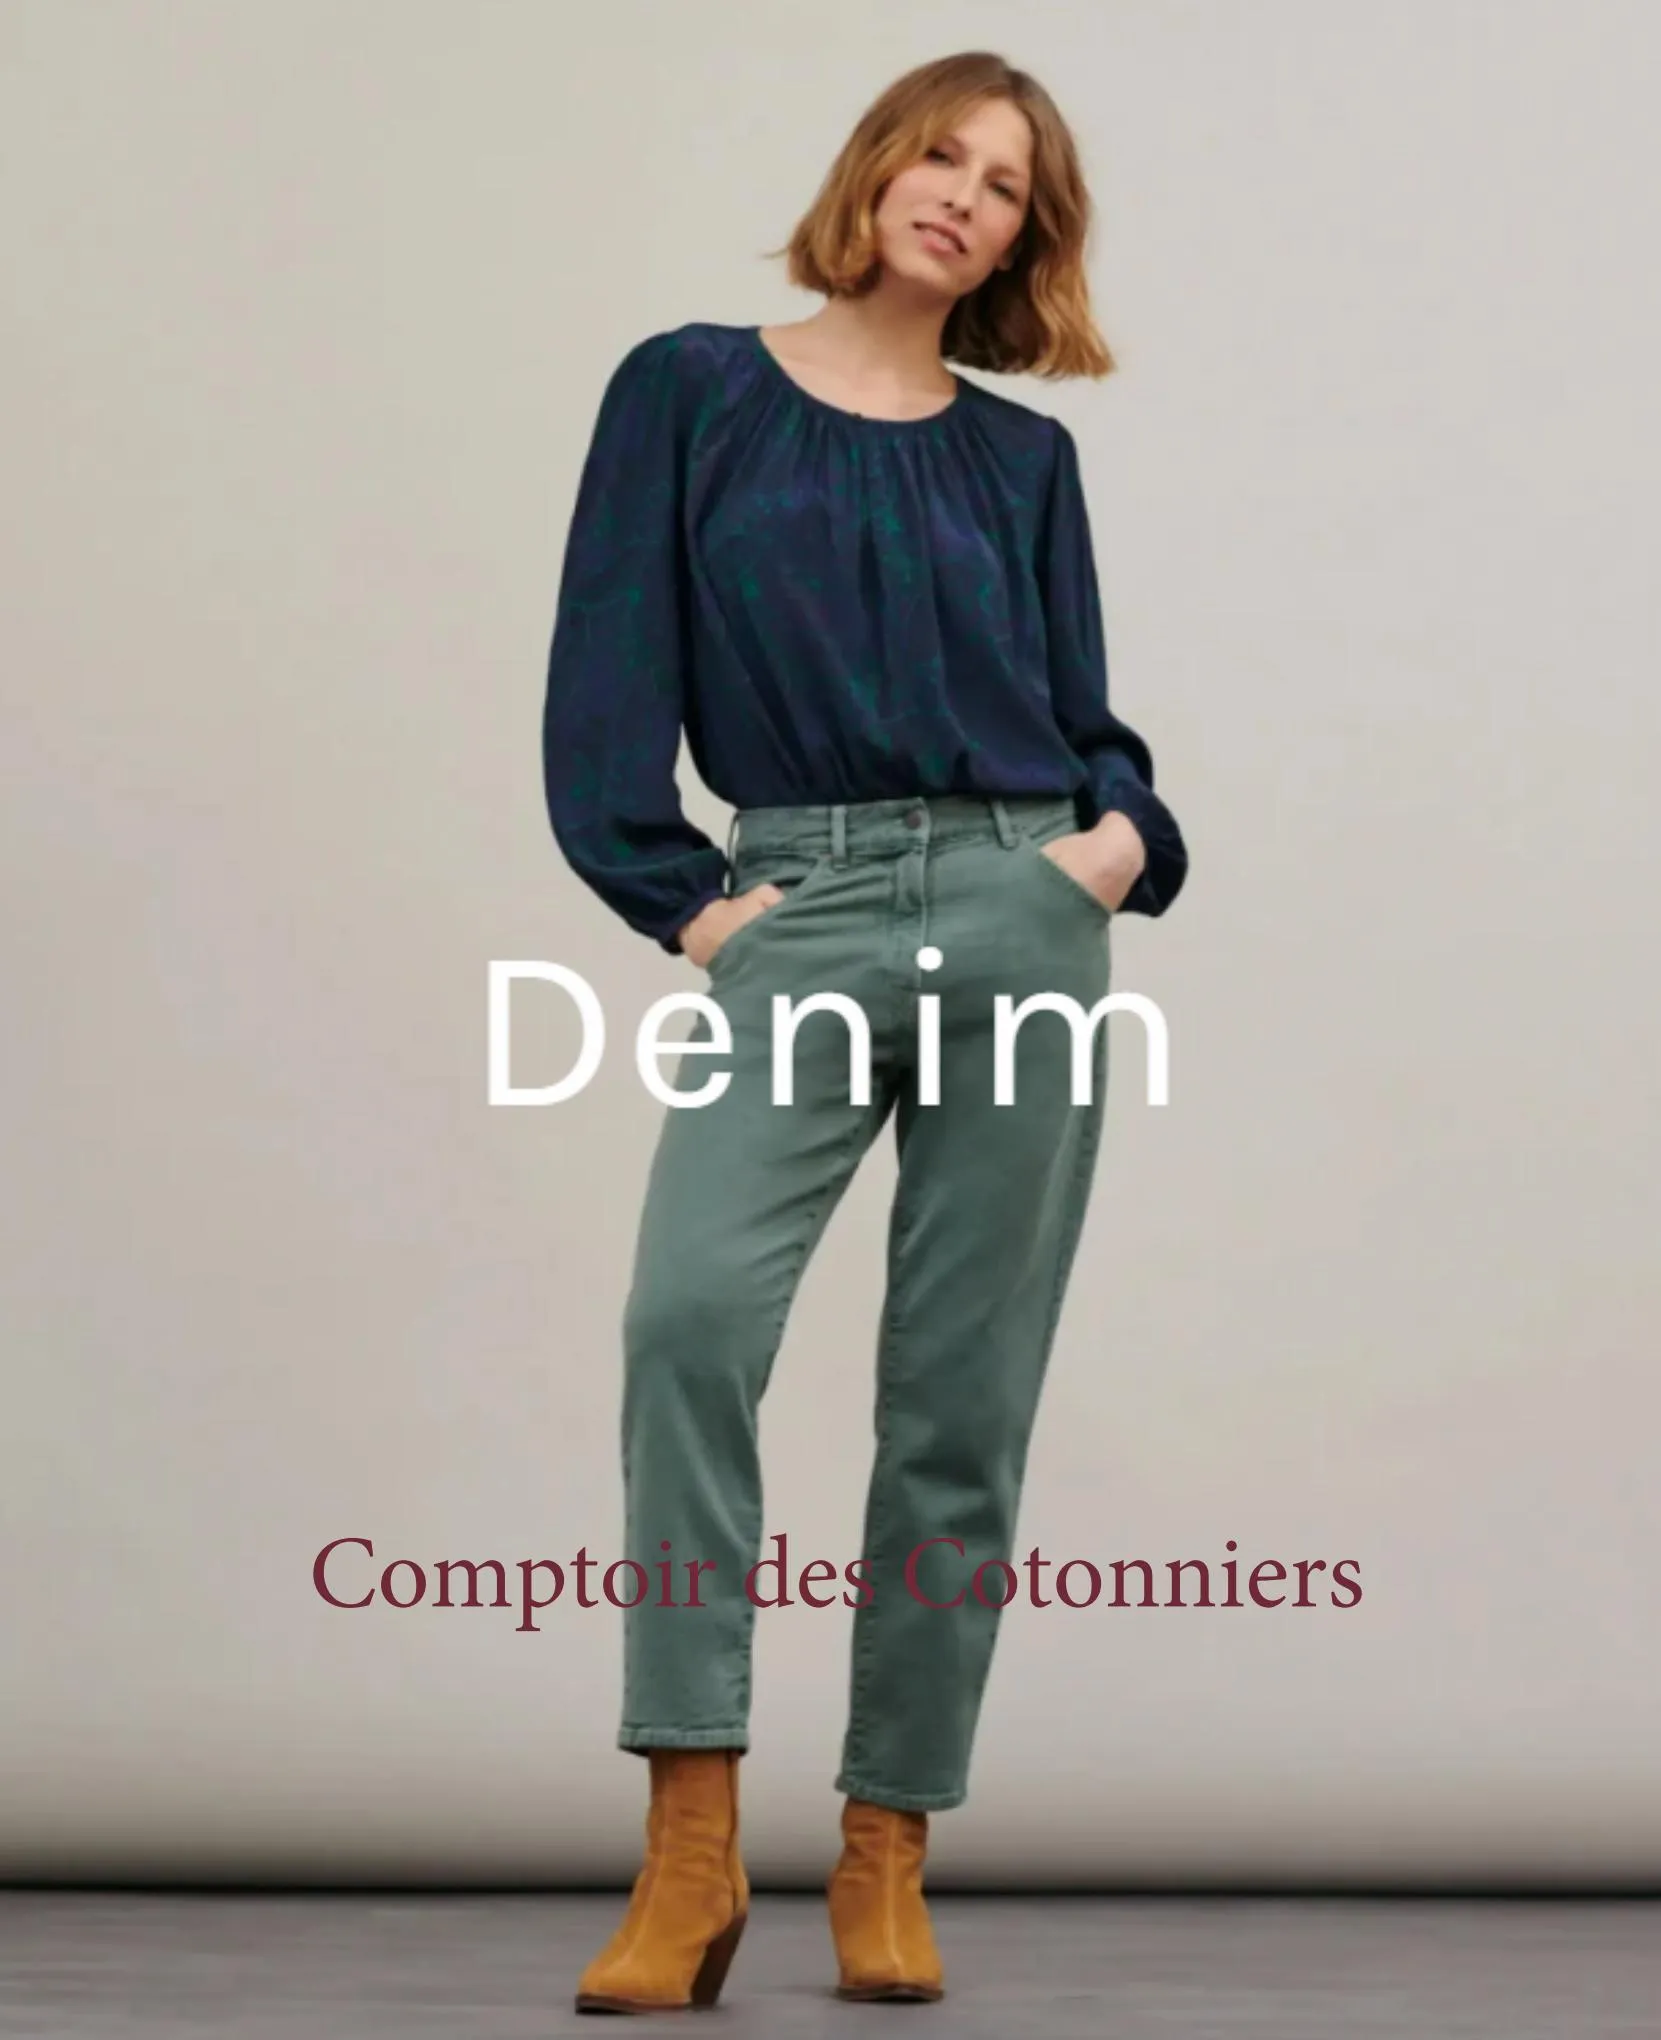 Catalogue Comptoir des cotonniers Denim, page 00001